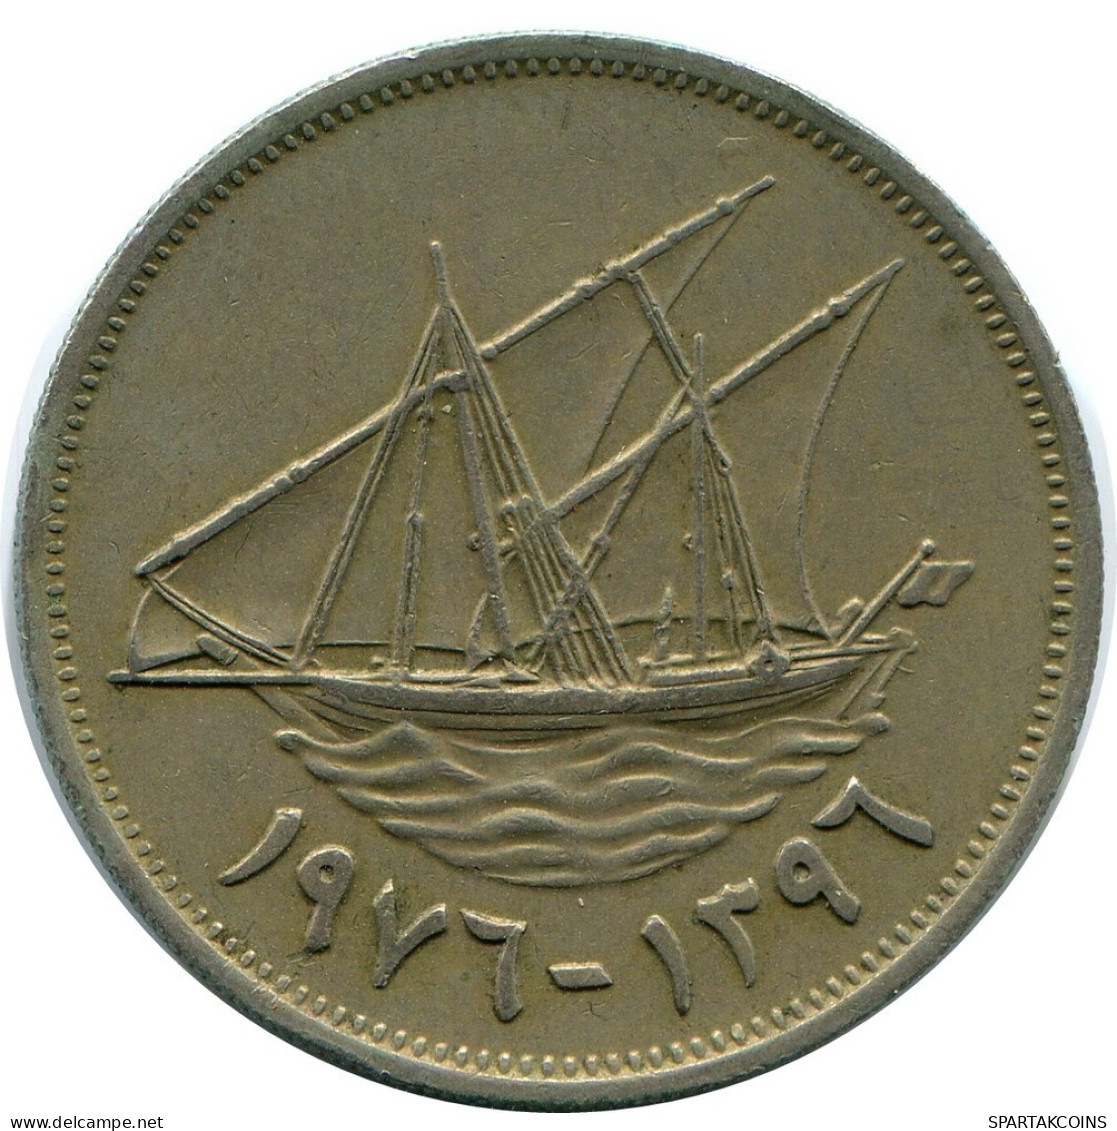 100 FILS 1976 KUWAIT Coin #AP351.U.A - Koeweit